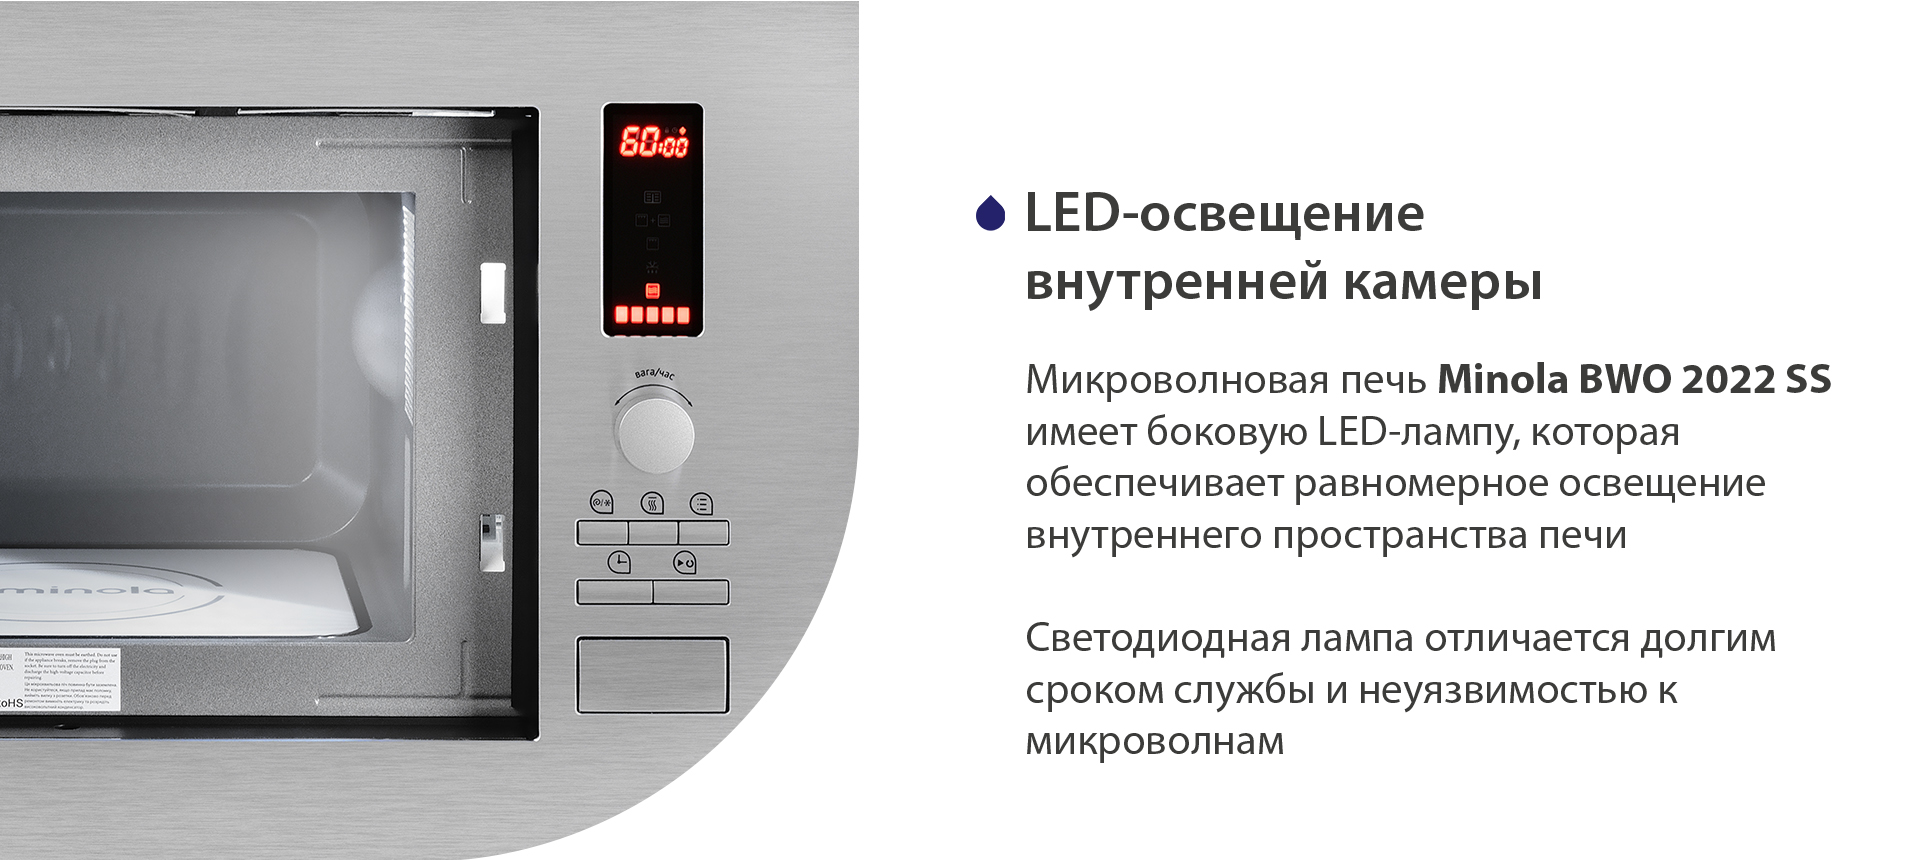 Микроволновая печь Minola BWO 2022 SS имеет боковую LED-лампу, которая обеспечивает равномерное освещение блюд на биокерамической панели. Светодиодная лампа отличается долгим сроком службы и совместимостью с микроволнами